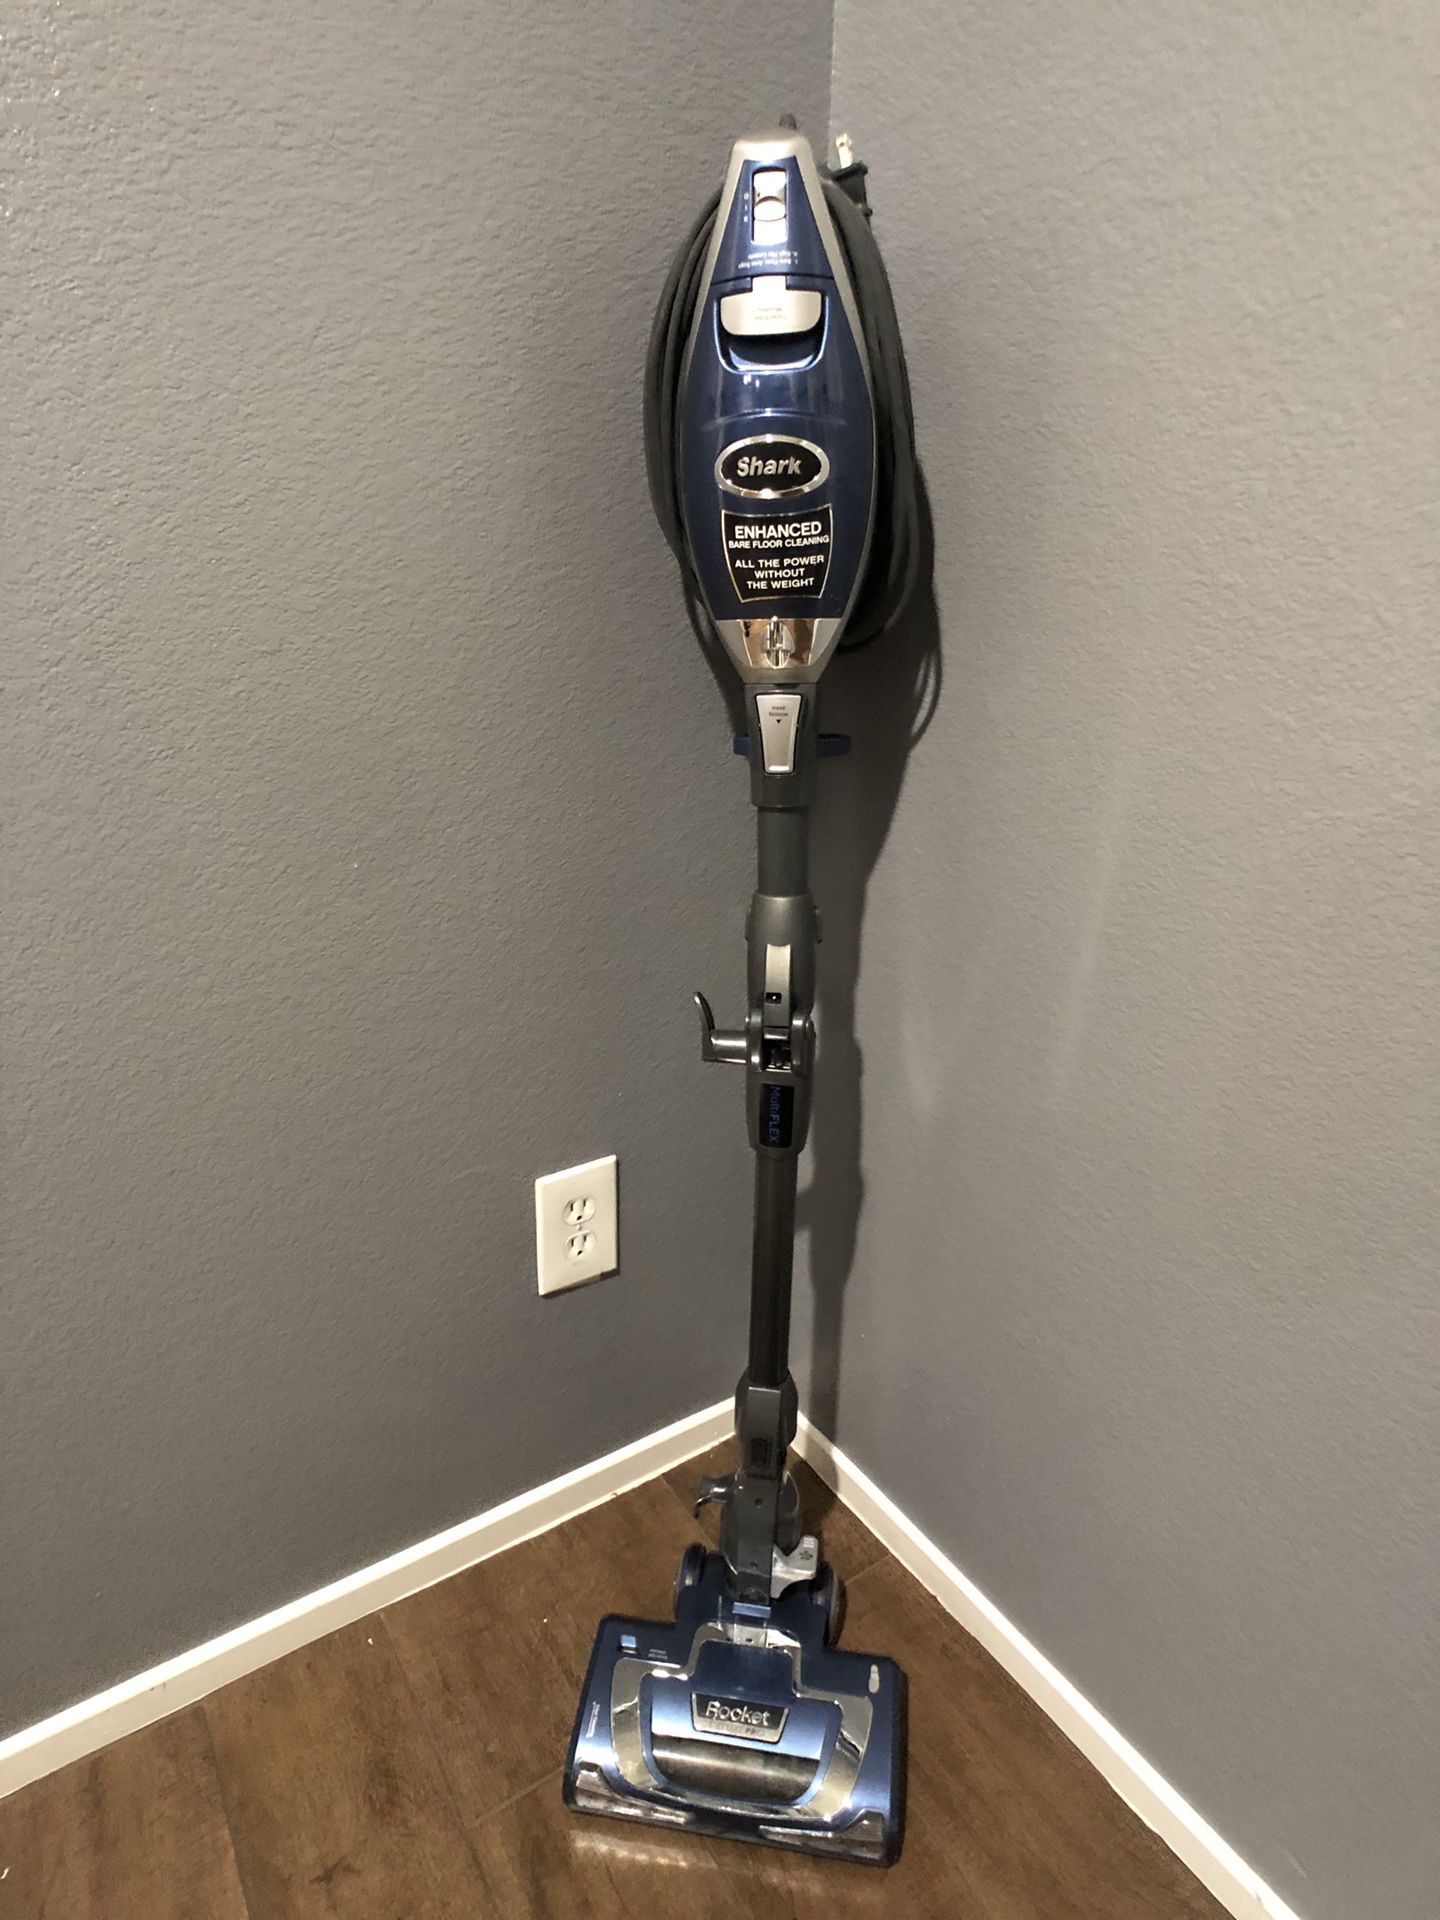 Shark rocket deluxe pro vacuum cleaner